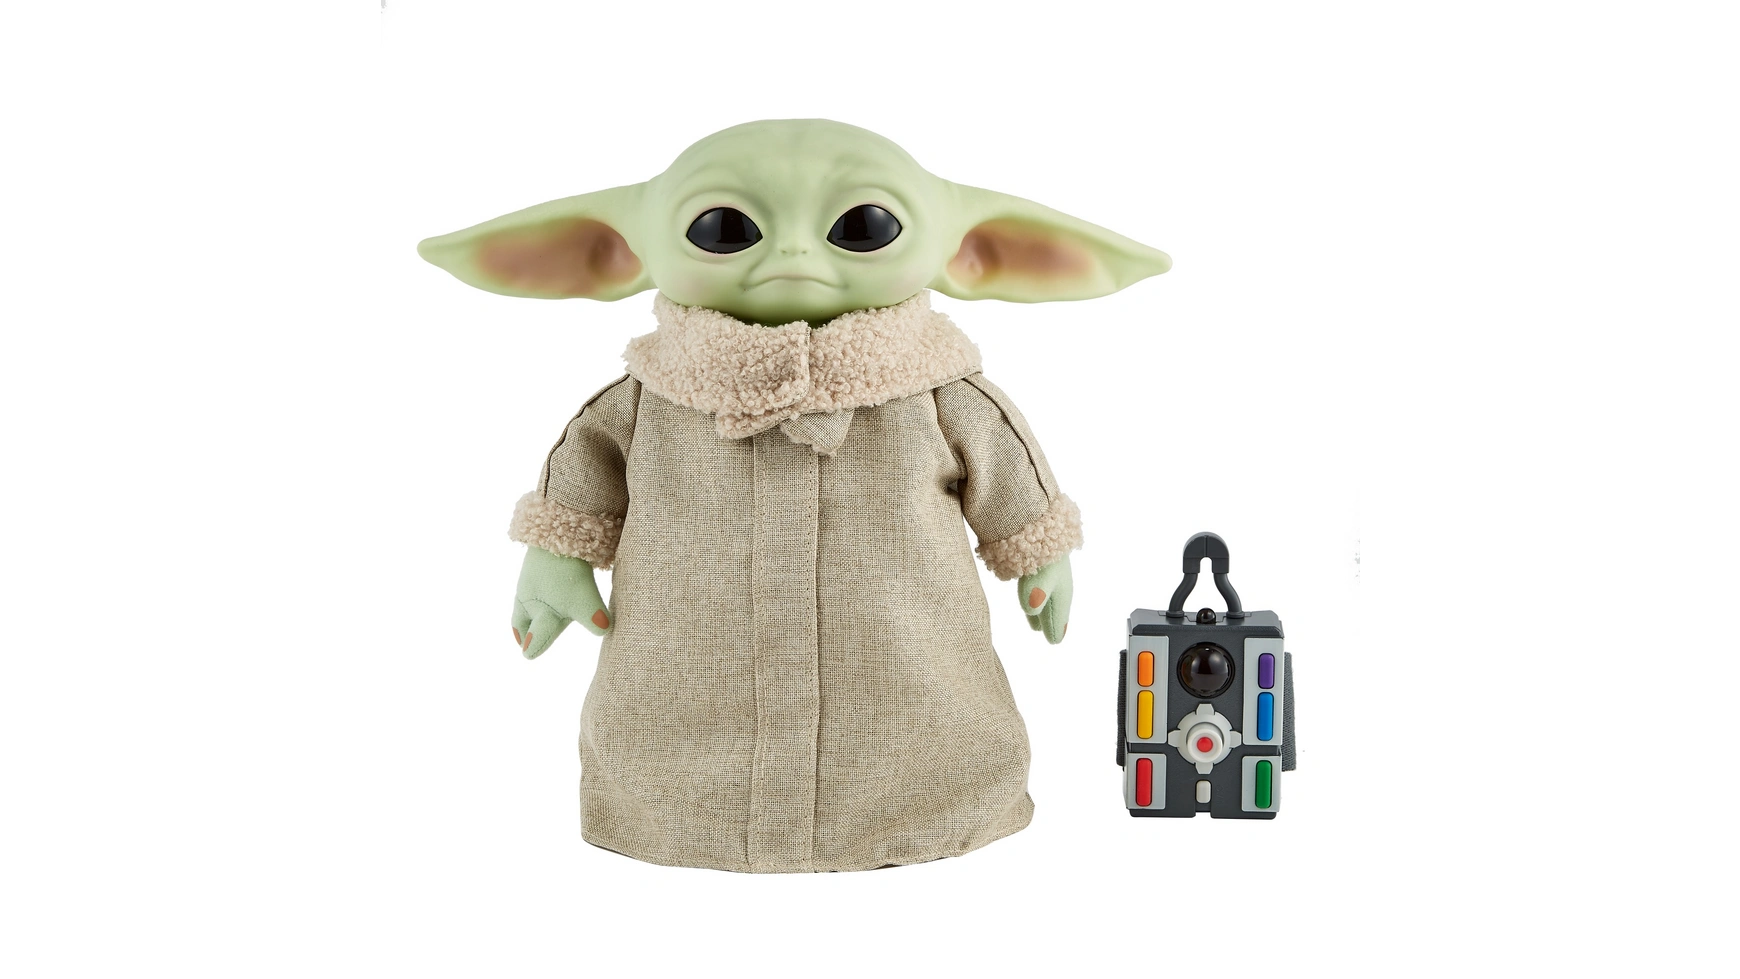 Функциональный плюш Disney Star Wars Mandalorian The Child Baby Yoda фигурка барбоскины малыш серия 2 6 8 см